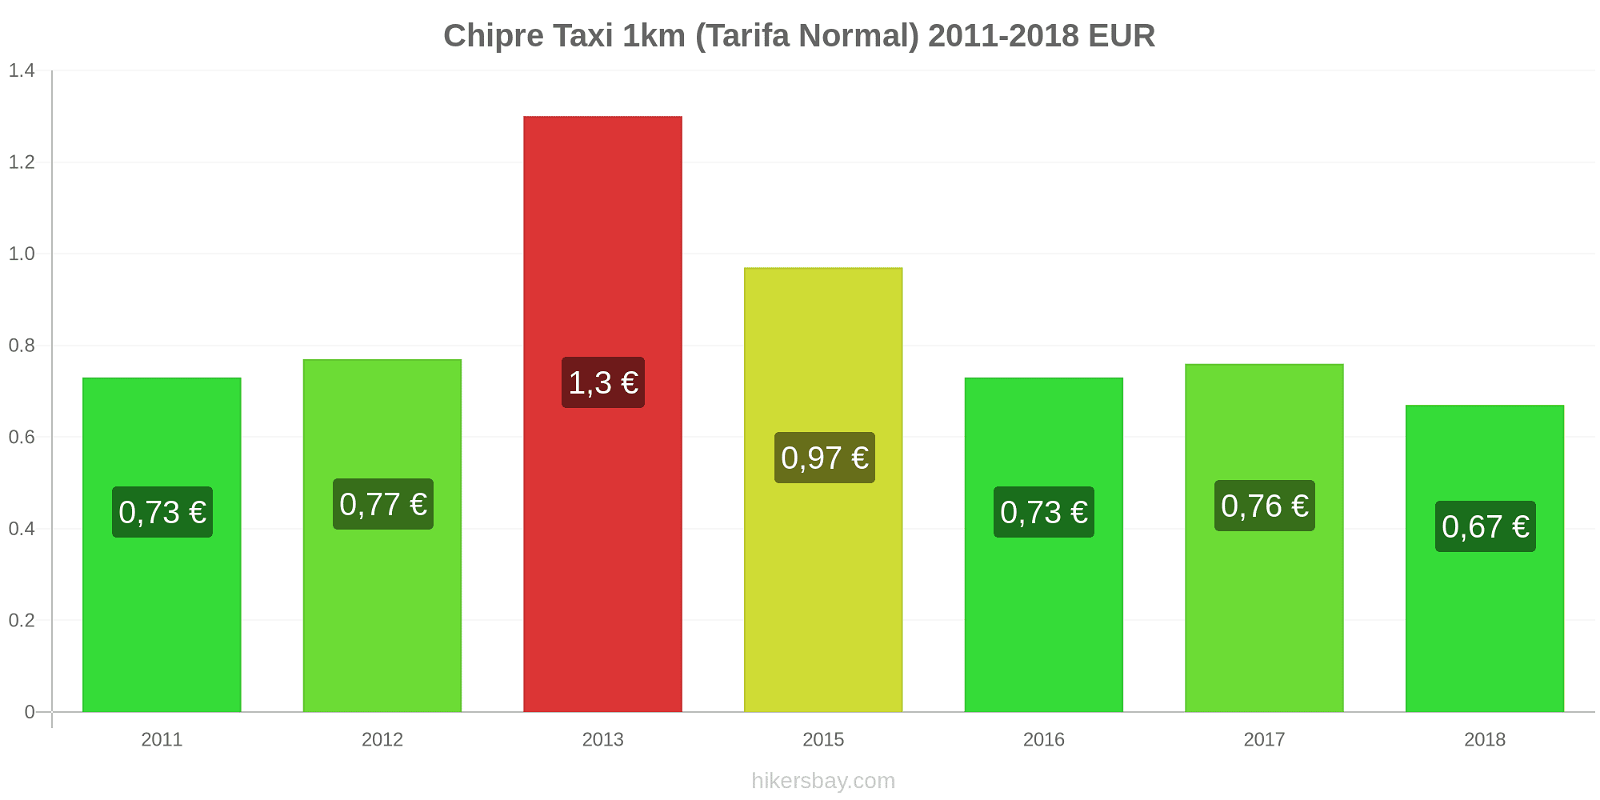 Chipre cambios de precios Taxi 1km (tarifa normal) hikersbay.com